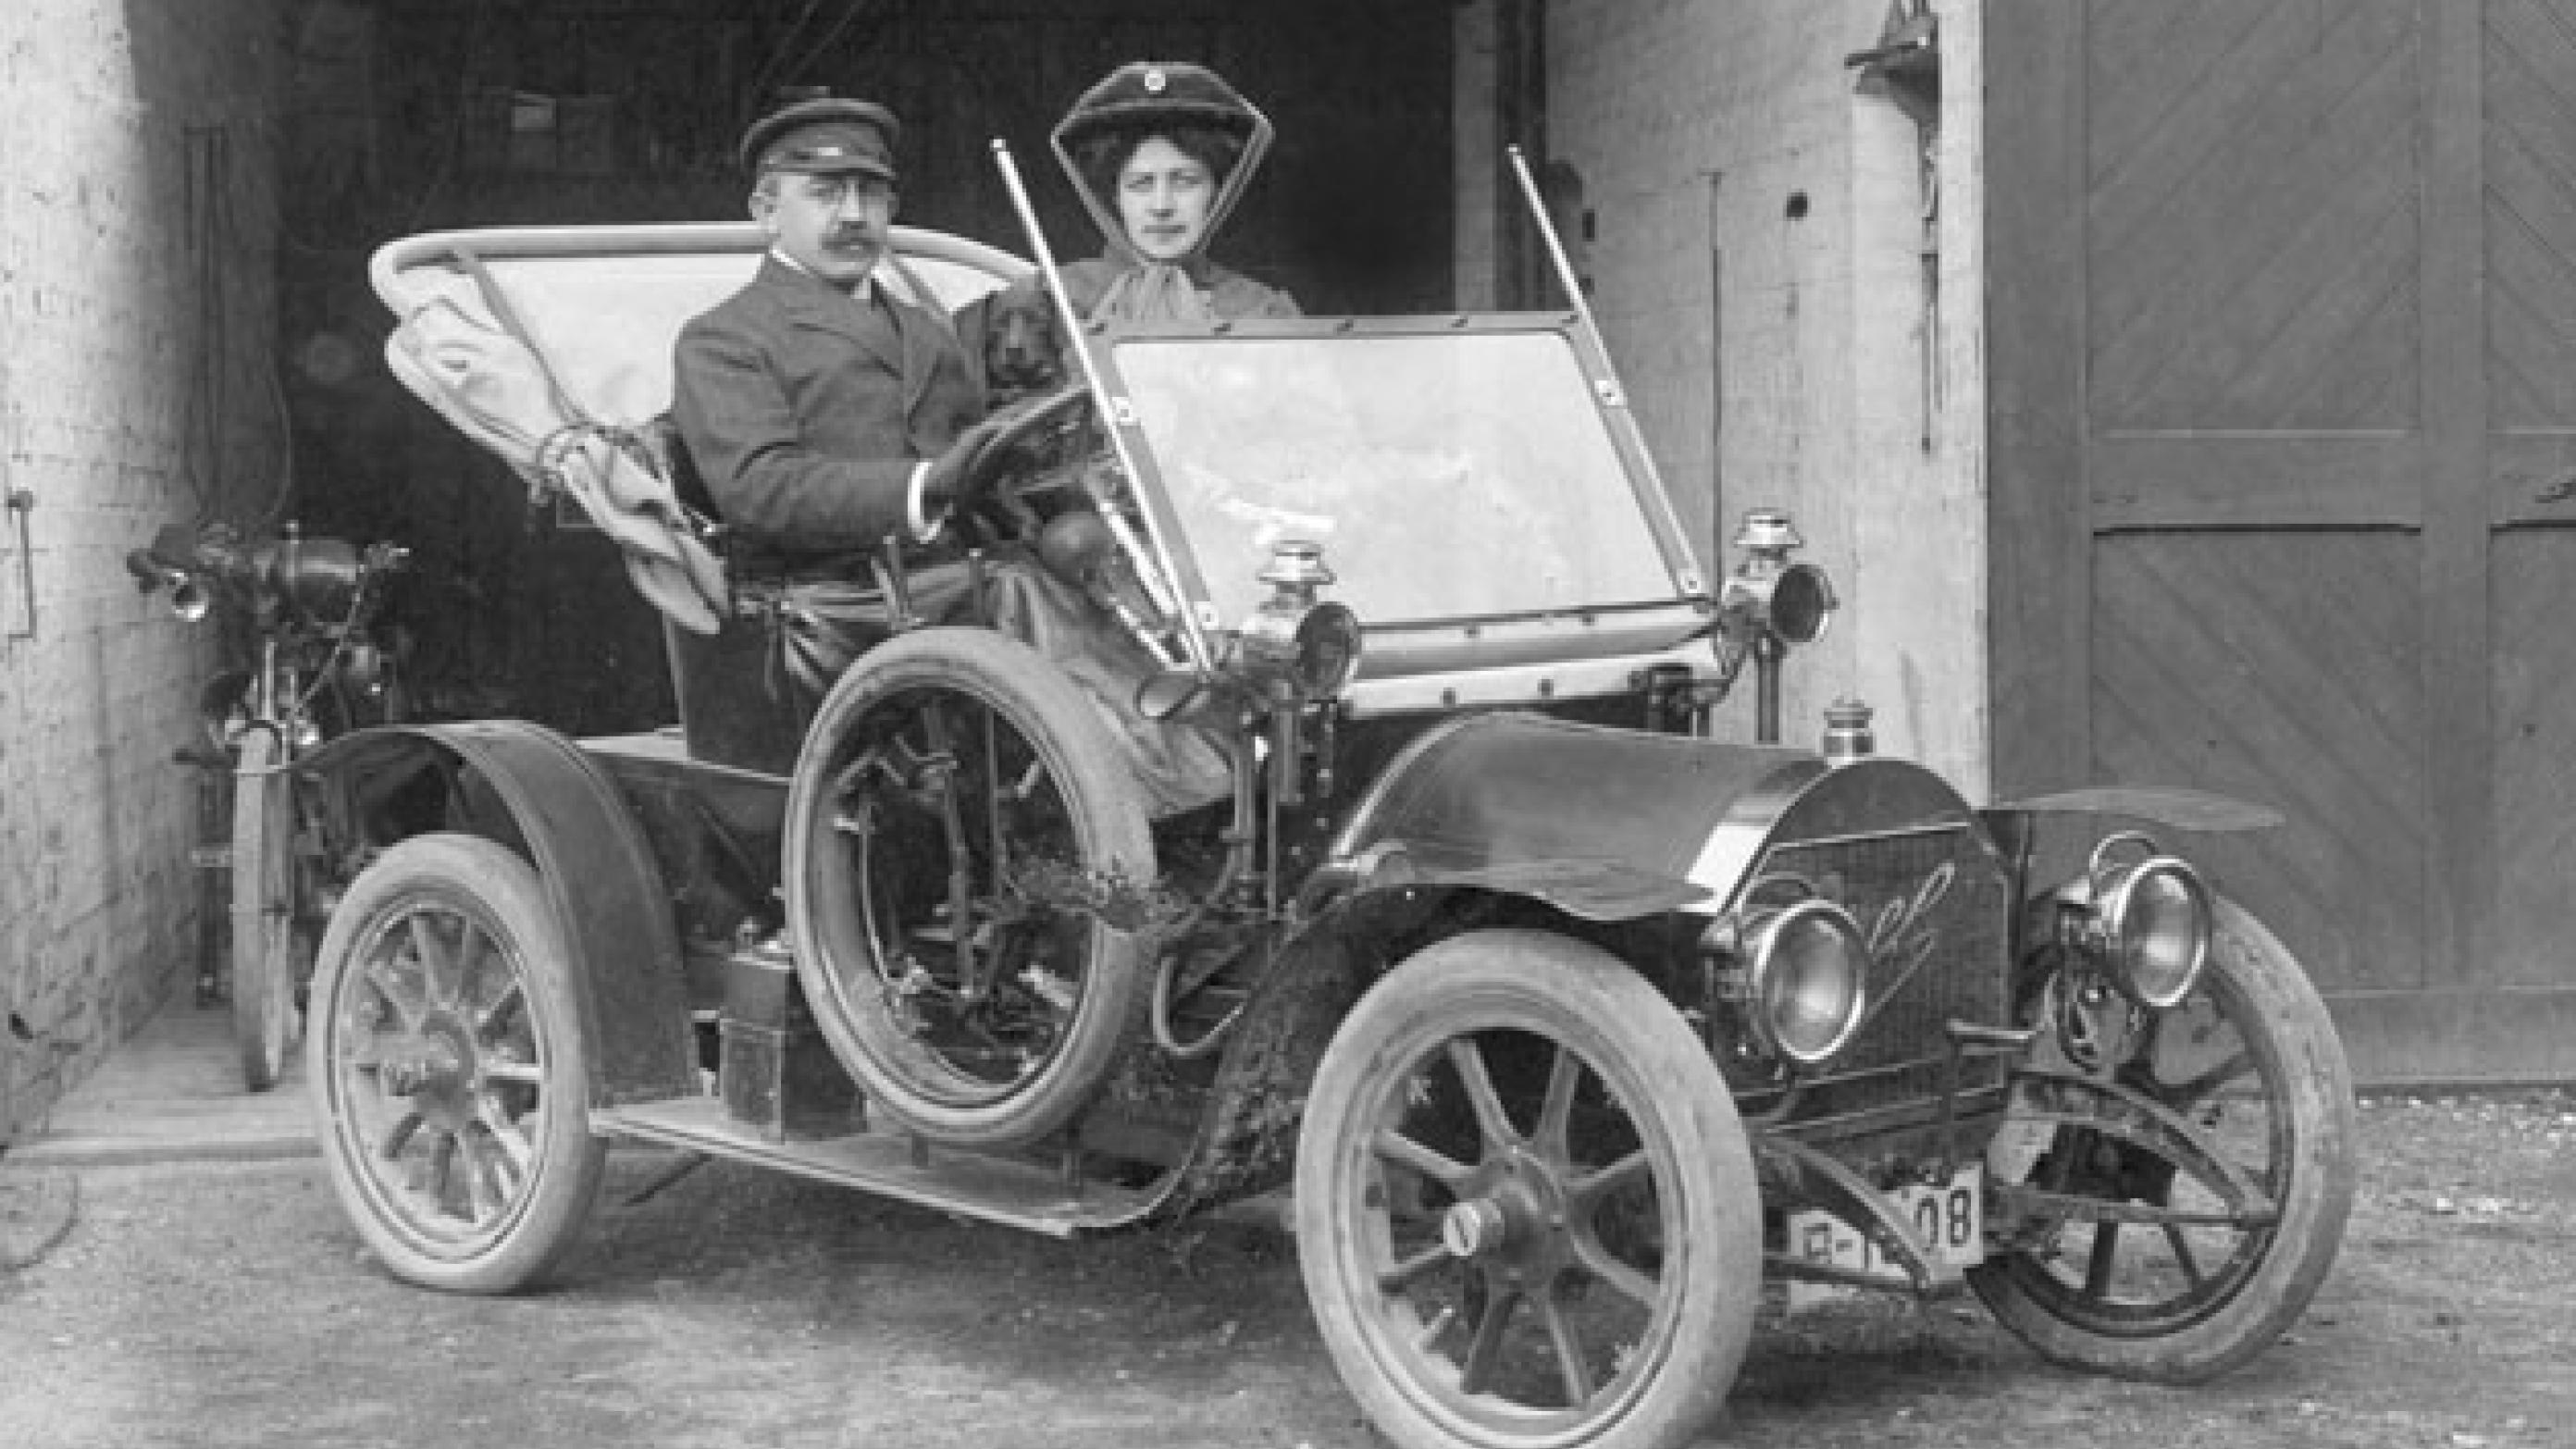 I 1909 sendte Opel sin model 4/8 PS på markedet. Det var en tosæders bil, og den kostede omkring 4.000 Mark – en uhørt lav pris, som betød, at også middelklassen kunne få råd til den. På grund af sin størrelse var den nem at komme omkring med, og læger begyndte hurtigt at bruge den til sygebesøg. Modellen fik derfor kælenavnet Doktorwagen, og 4/8 fortæller, at bilen har en firecylindret rækkemotor med otte hestekræfter (PS = Pferdestärke) (Foto: Opel).